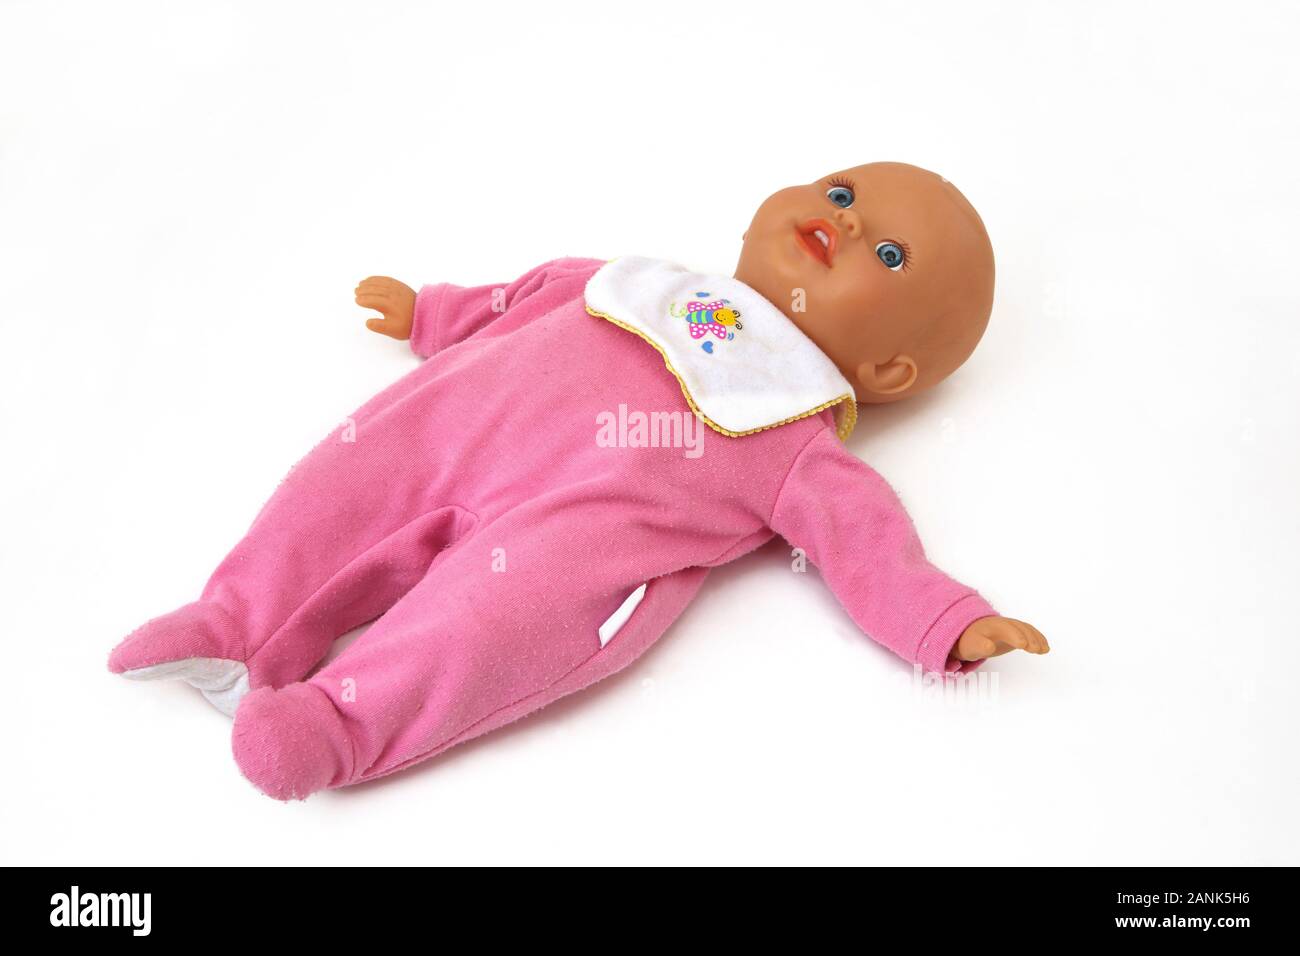 Fisher-Price weichen Körper, Baby Puppe trägt ein Body und Bib  Stockfotografie - Alamy